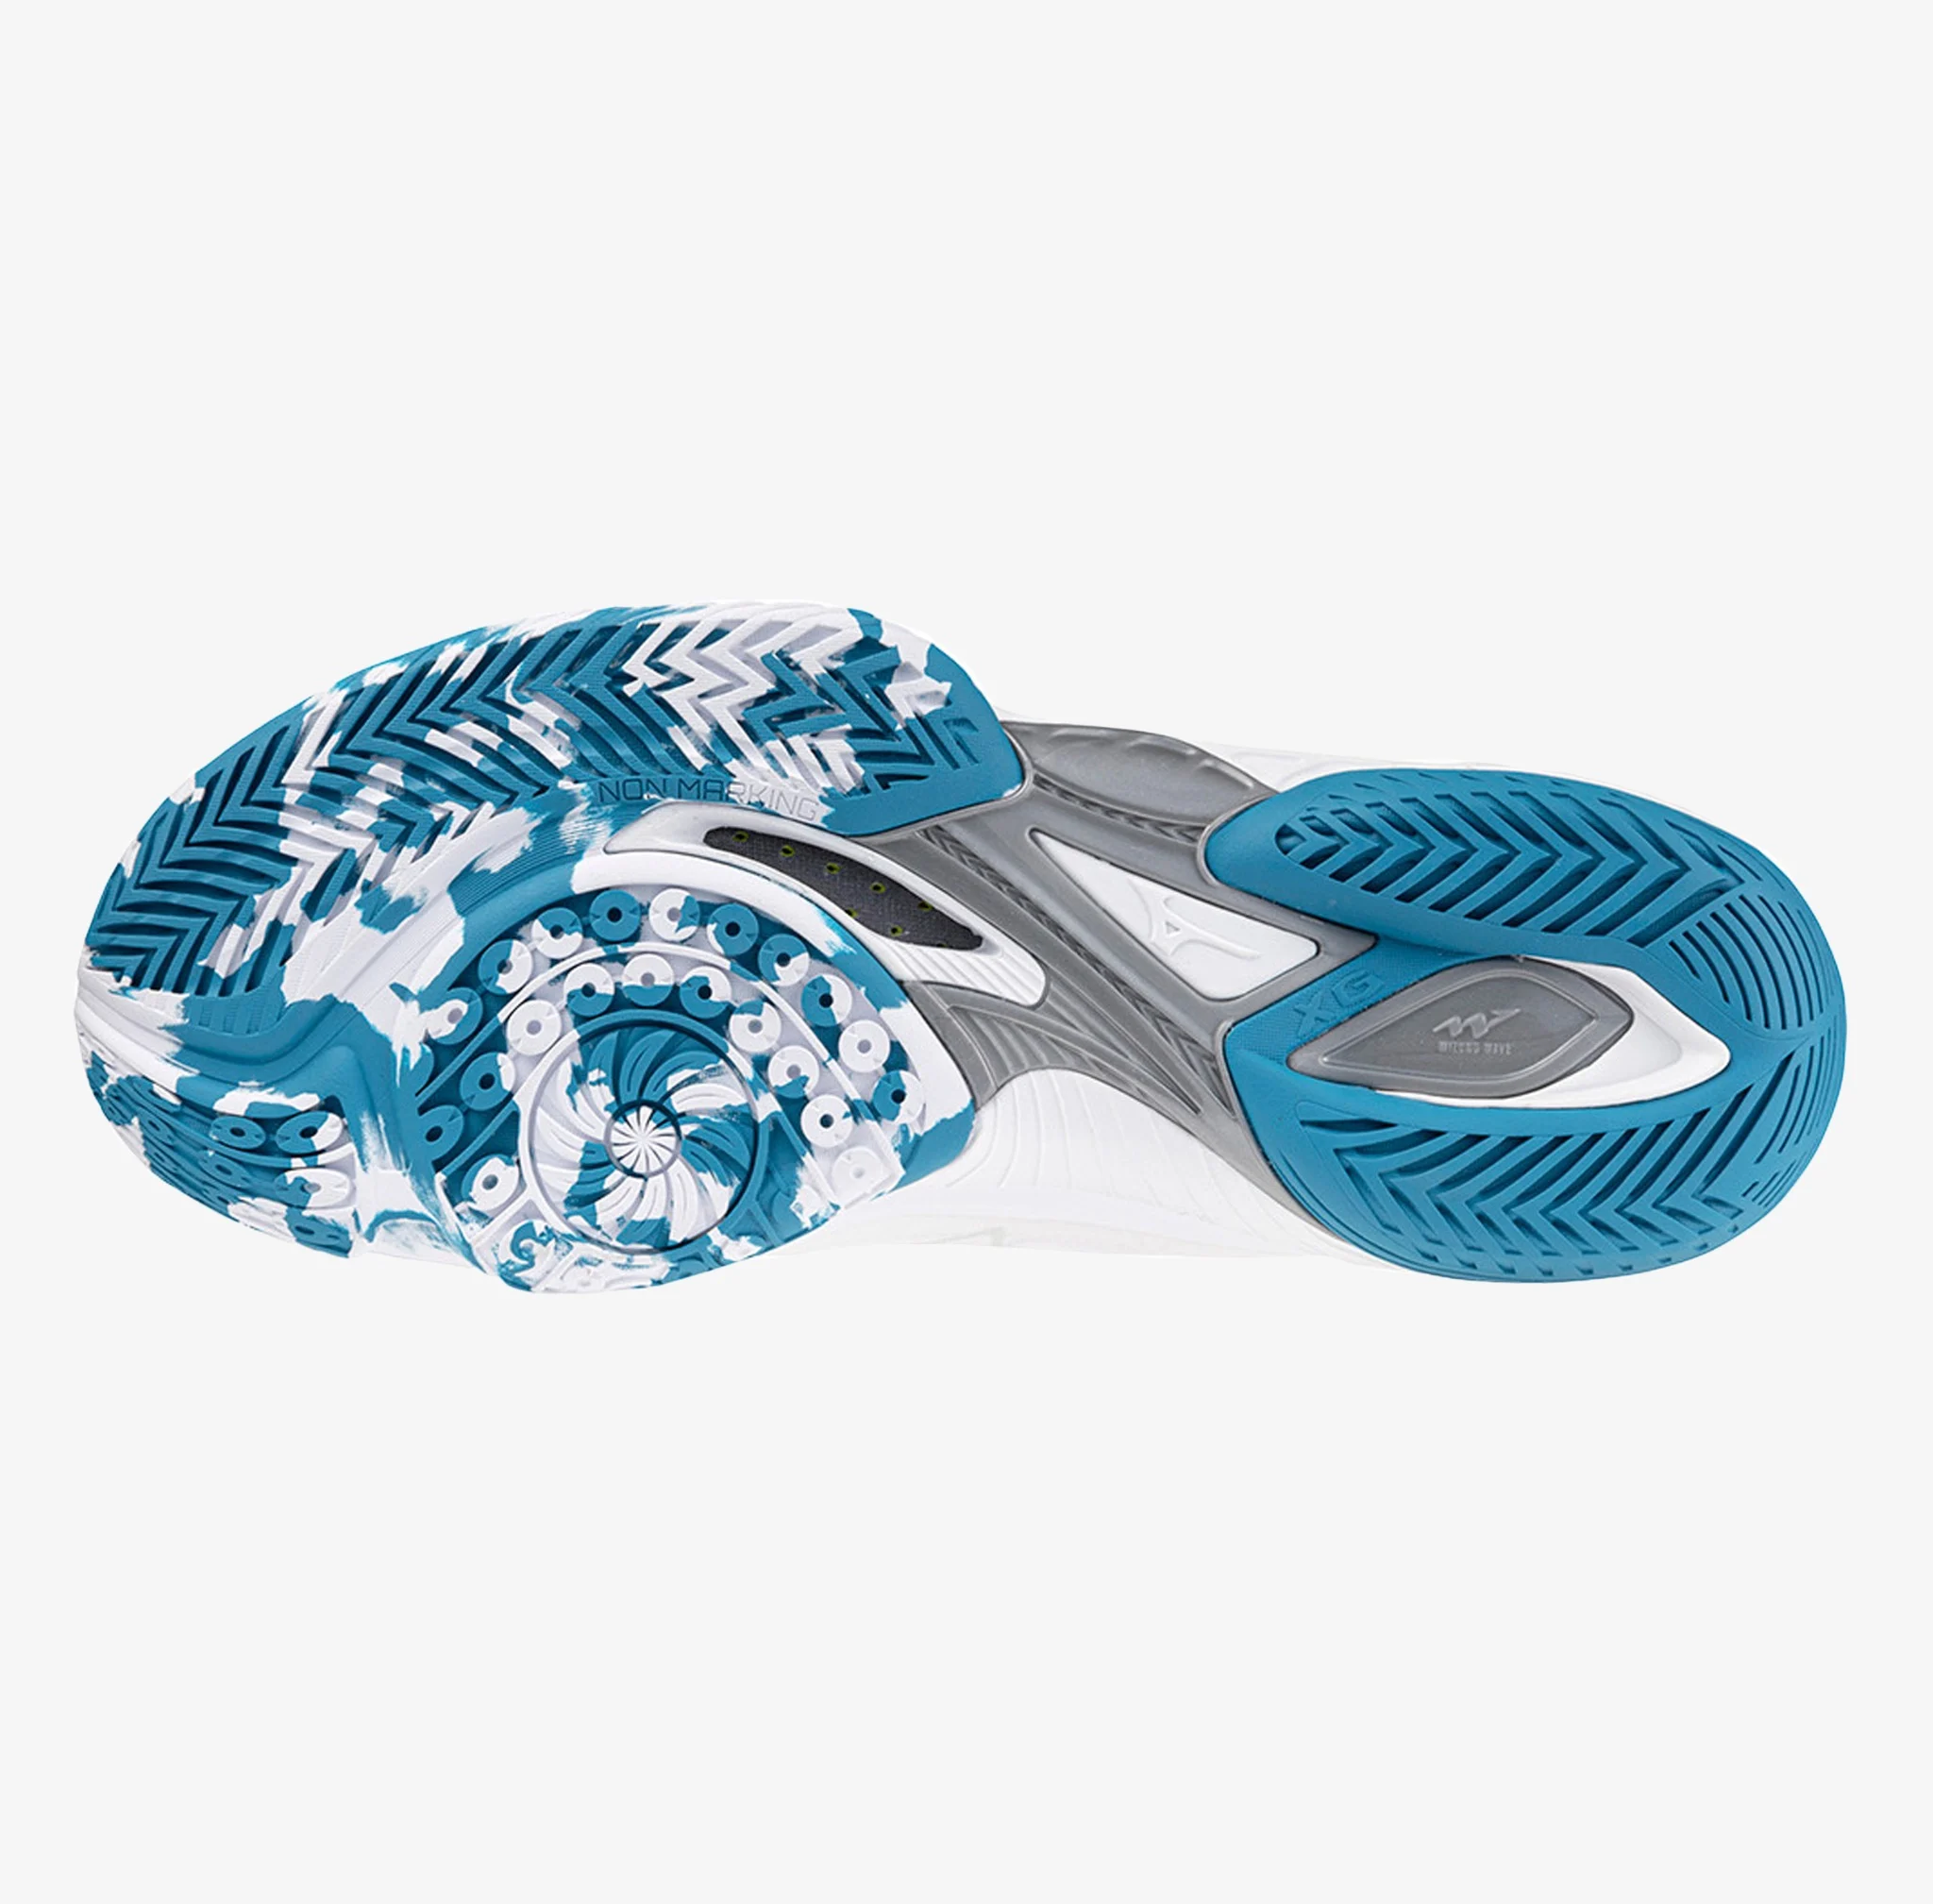 Giày cầu lông Mizuno Wave Claw Neo 2 - Trắng xanh chính hãng